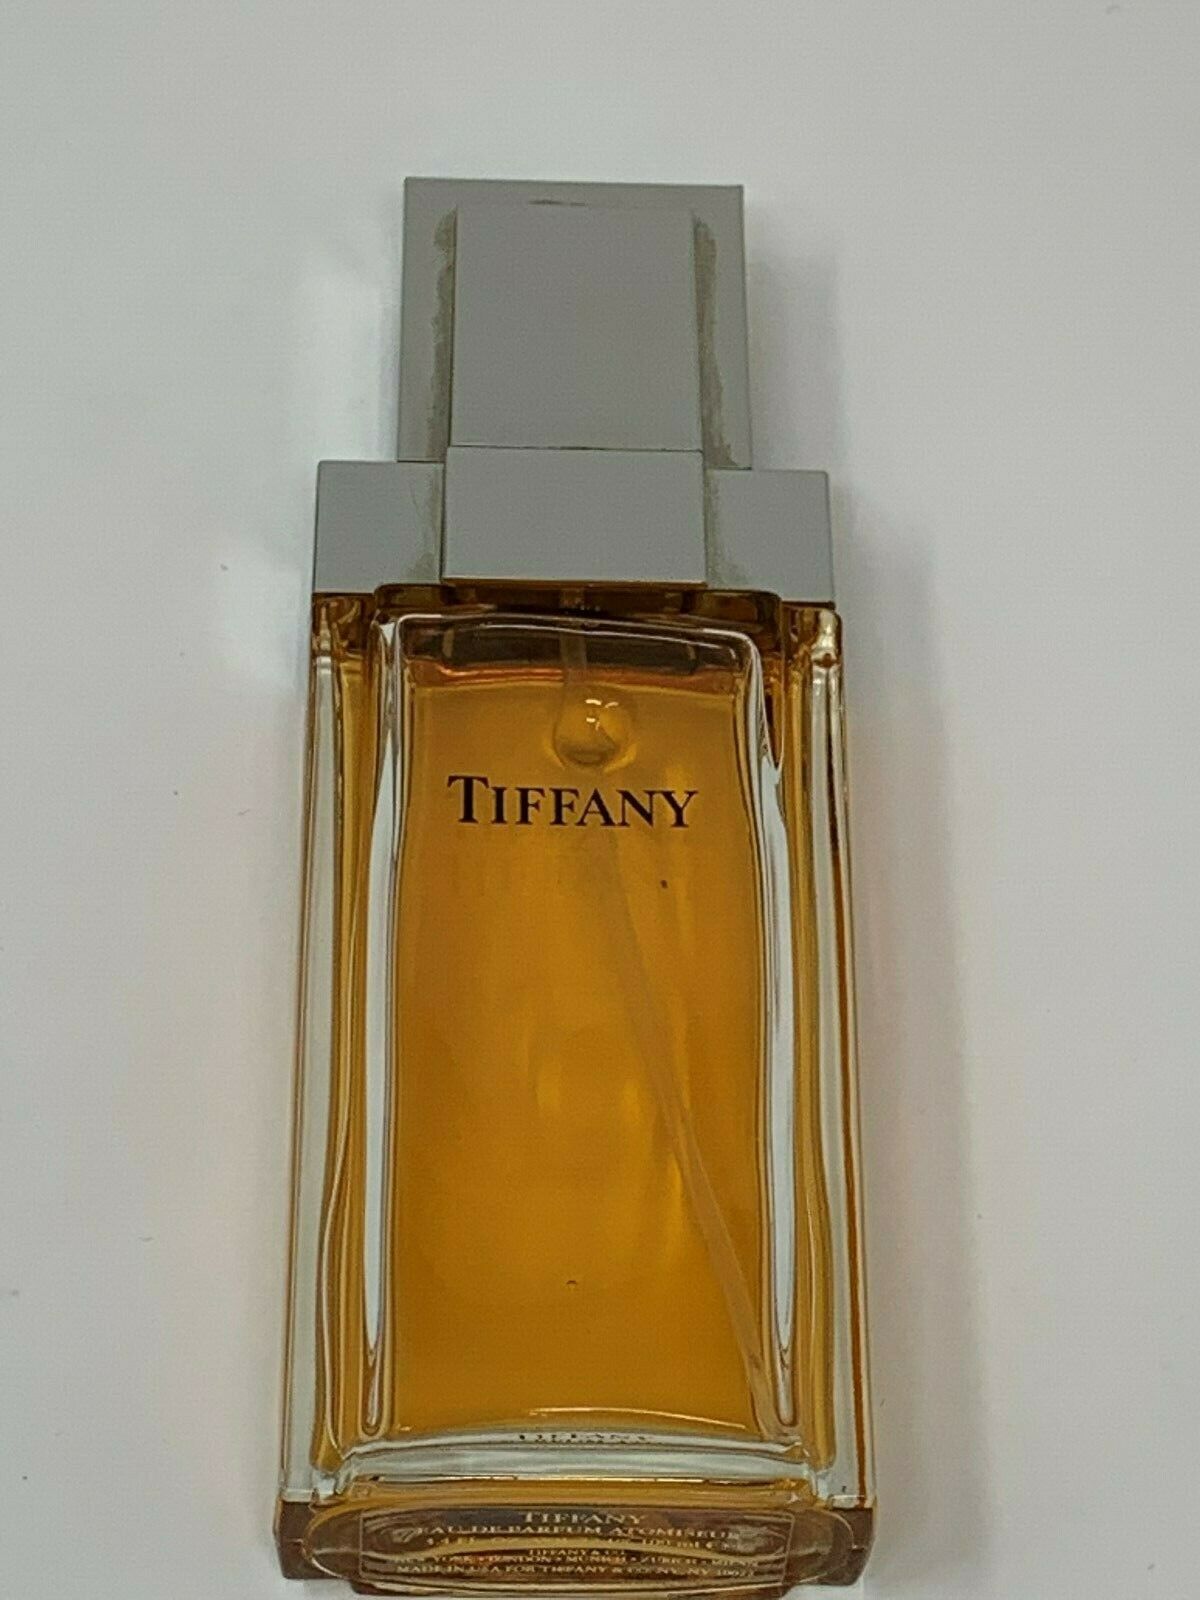 Vintage Tiffany 3.4 Oz Eau De Parfum Atomiseur Spray Perfume Classic